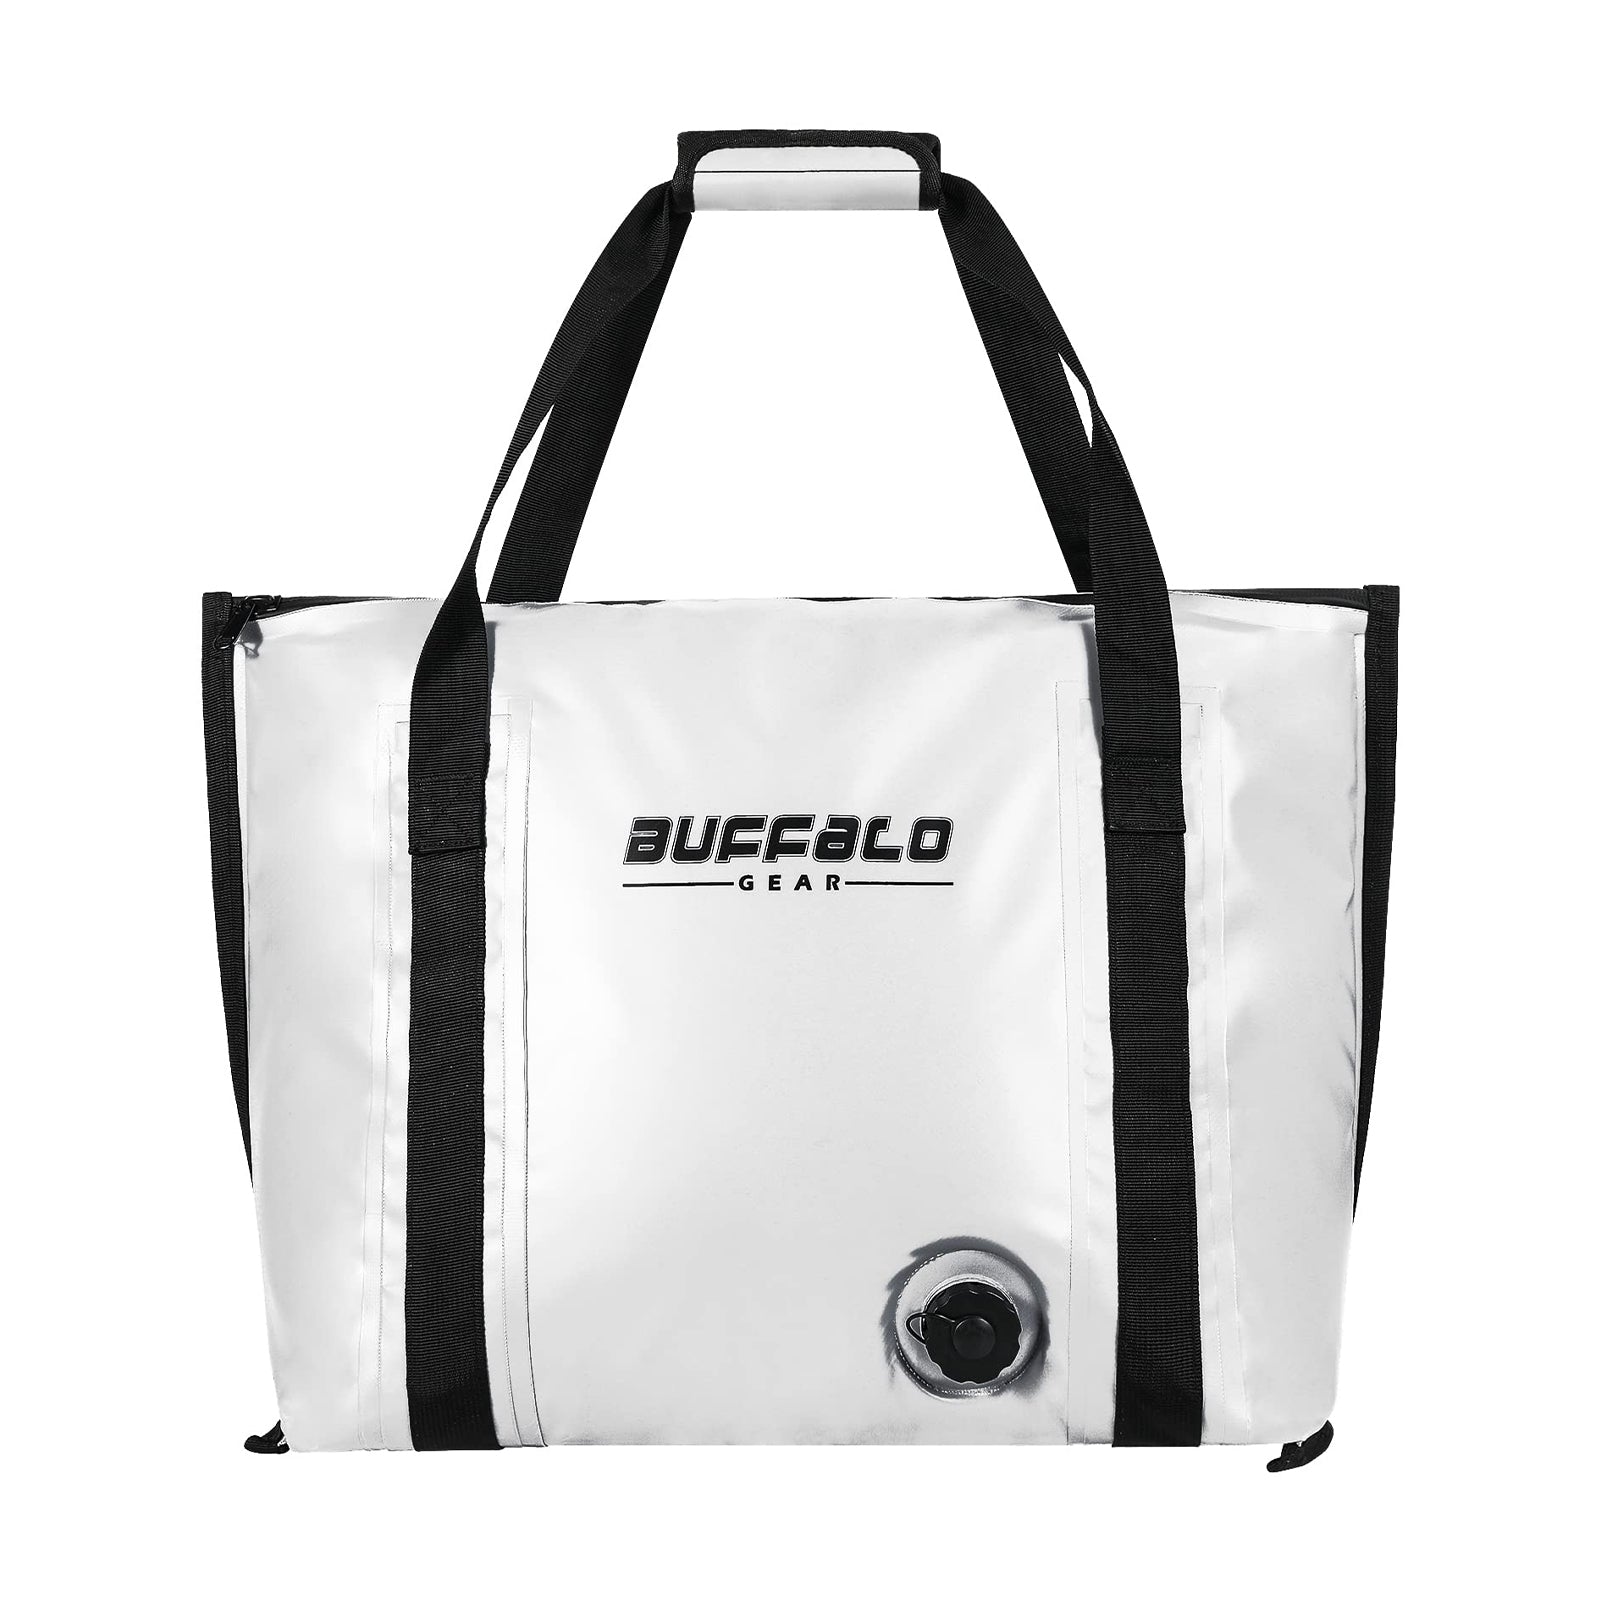 26L Insulated Fish Bag Cooler Flat Bottom - Buffalo Gear 